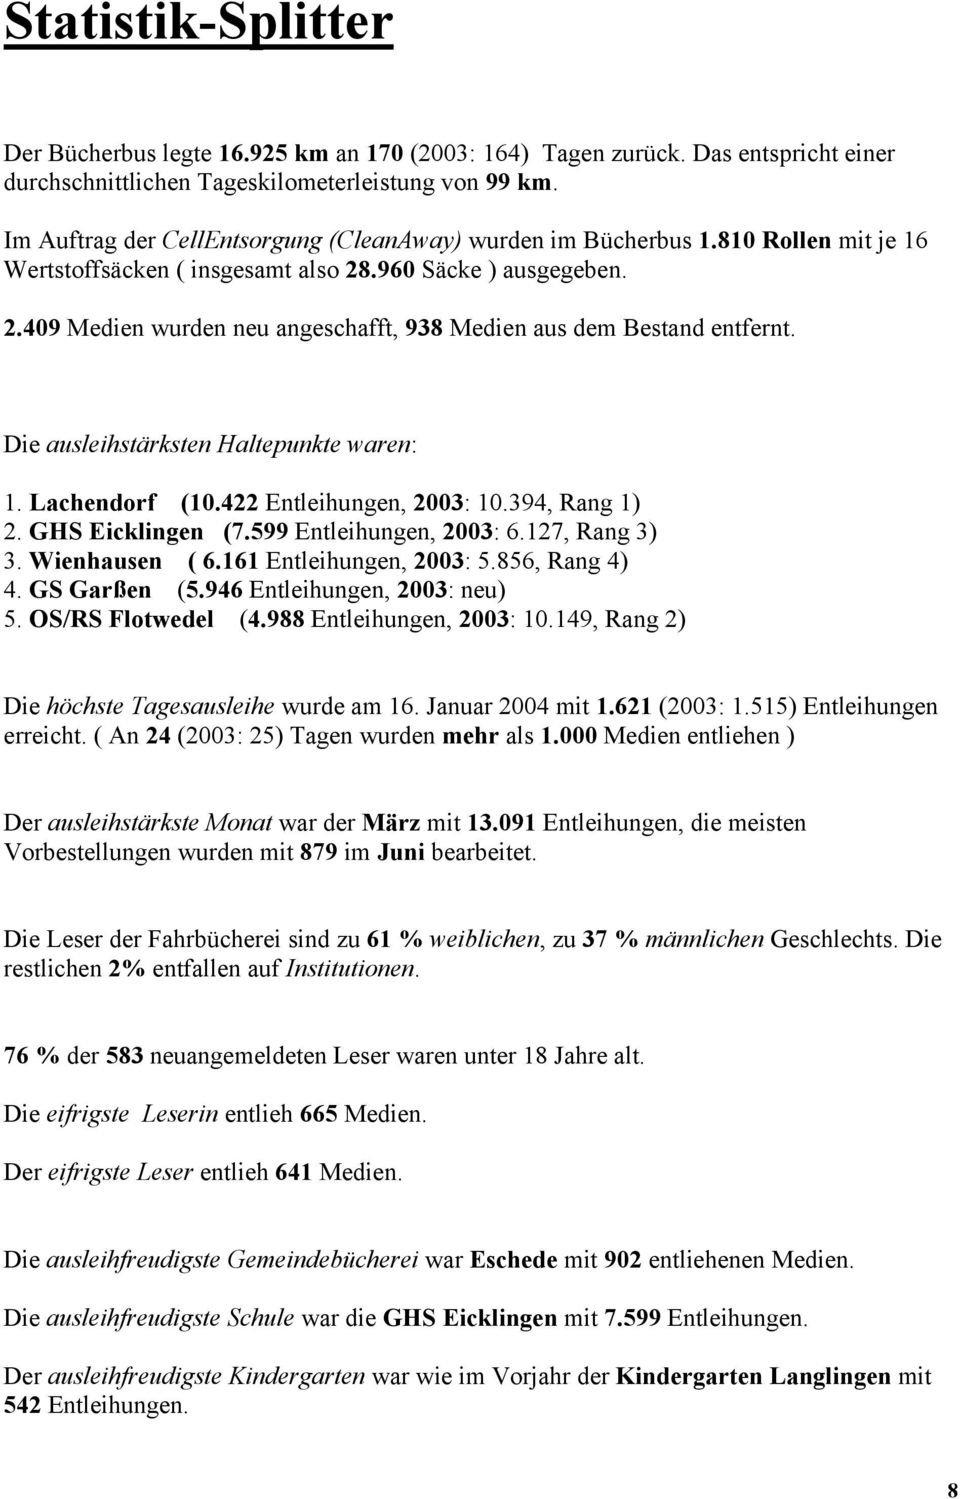 Die ausleihstärksten Haltepunkte waren: 1. Lachendorf (10.422 Entleihungen, 2003: 10.394, Rang 1) 2. GHS Eicklingen (7.599 Entleihungen, 2003: 6.127, Rang 3) 3. Wienhausen ( 6.